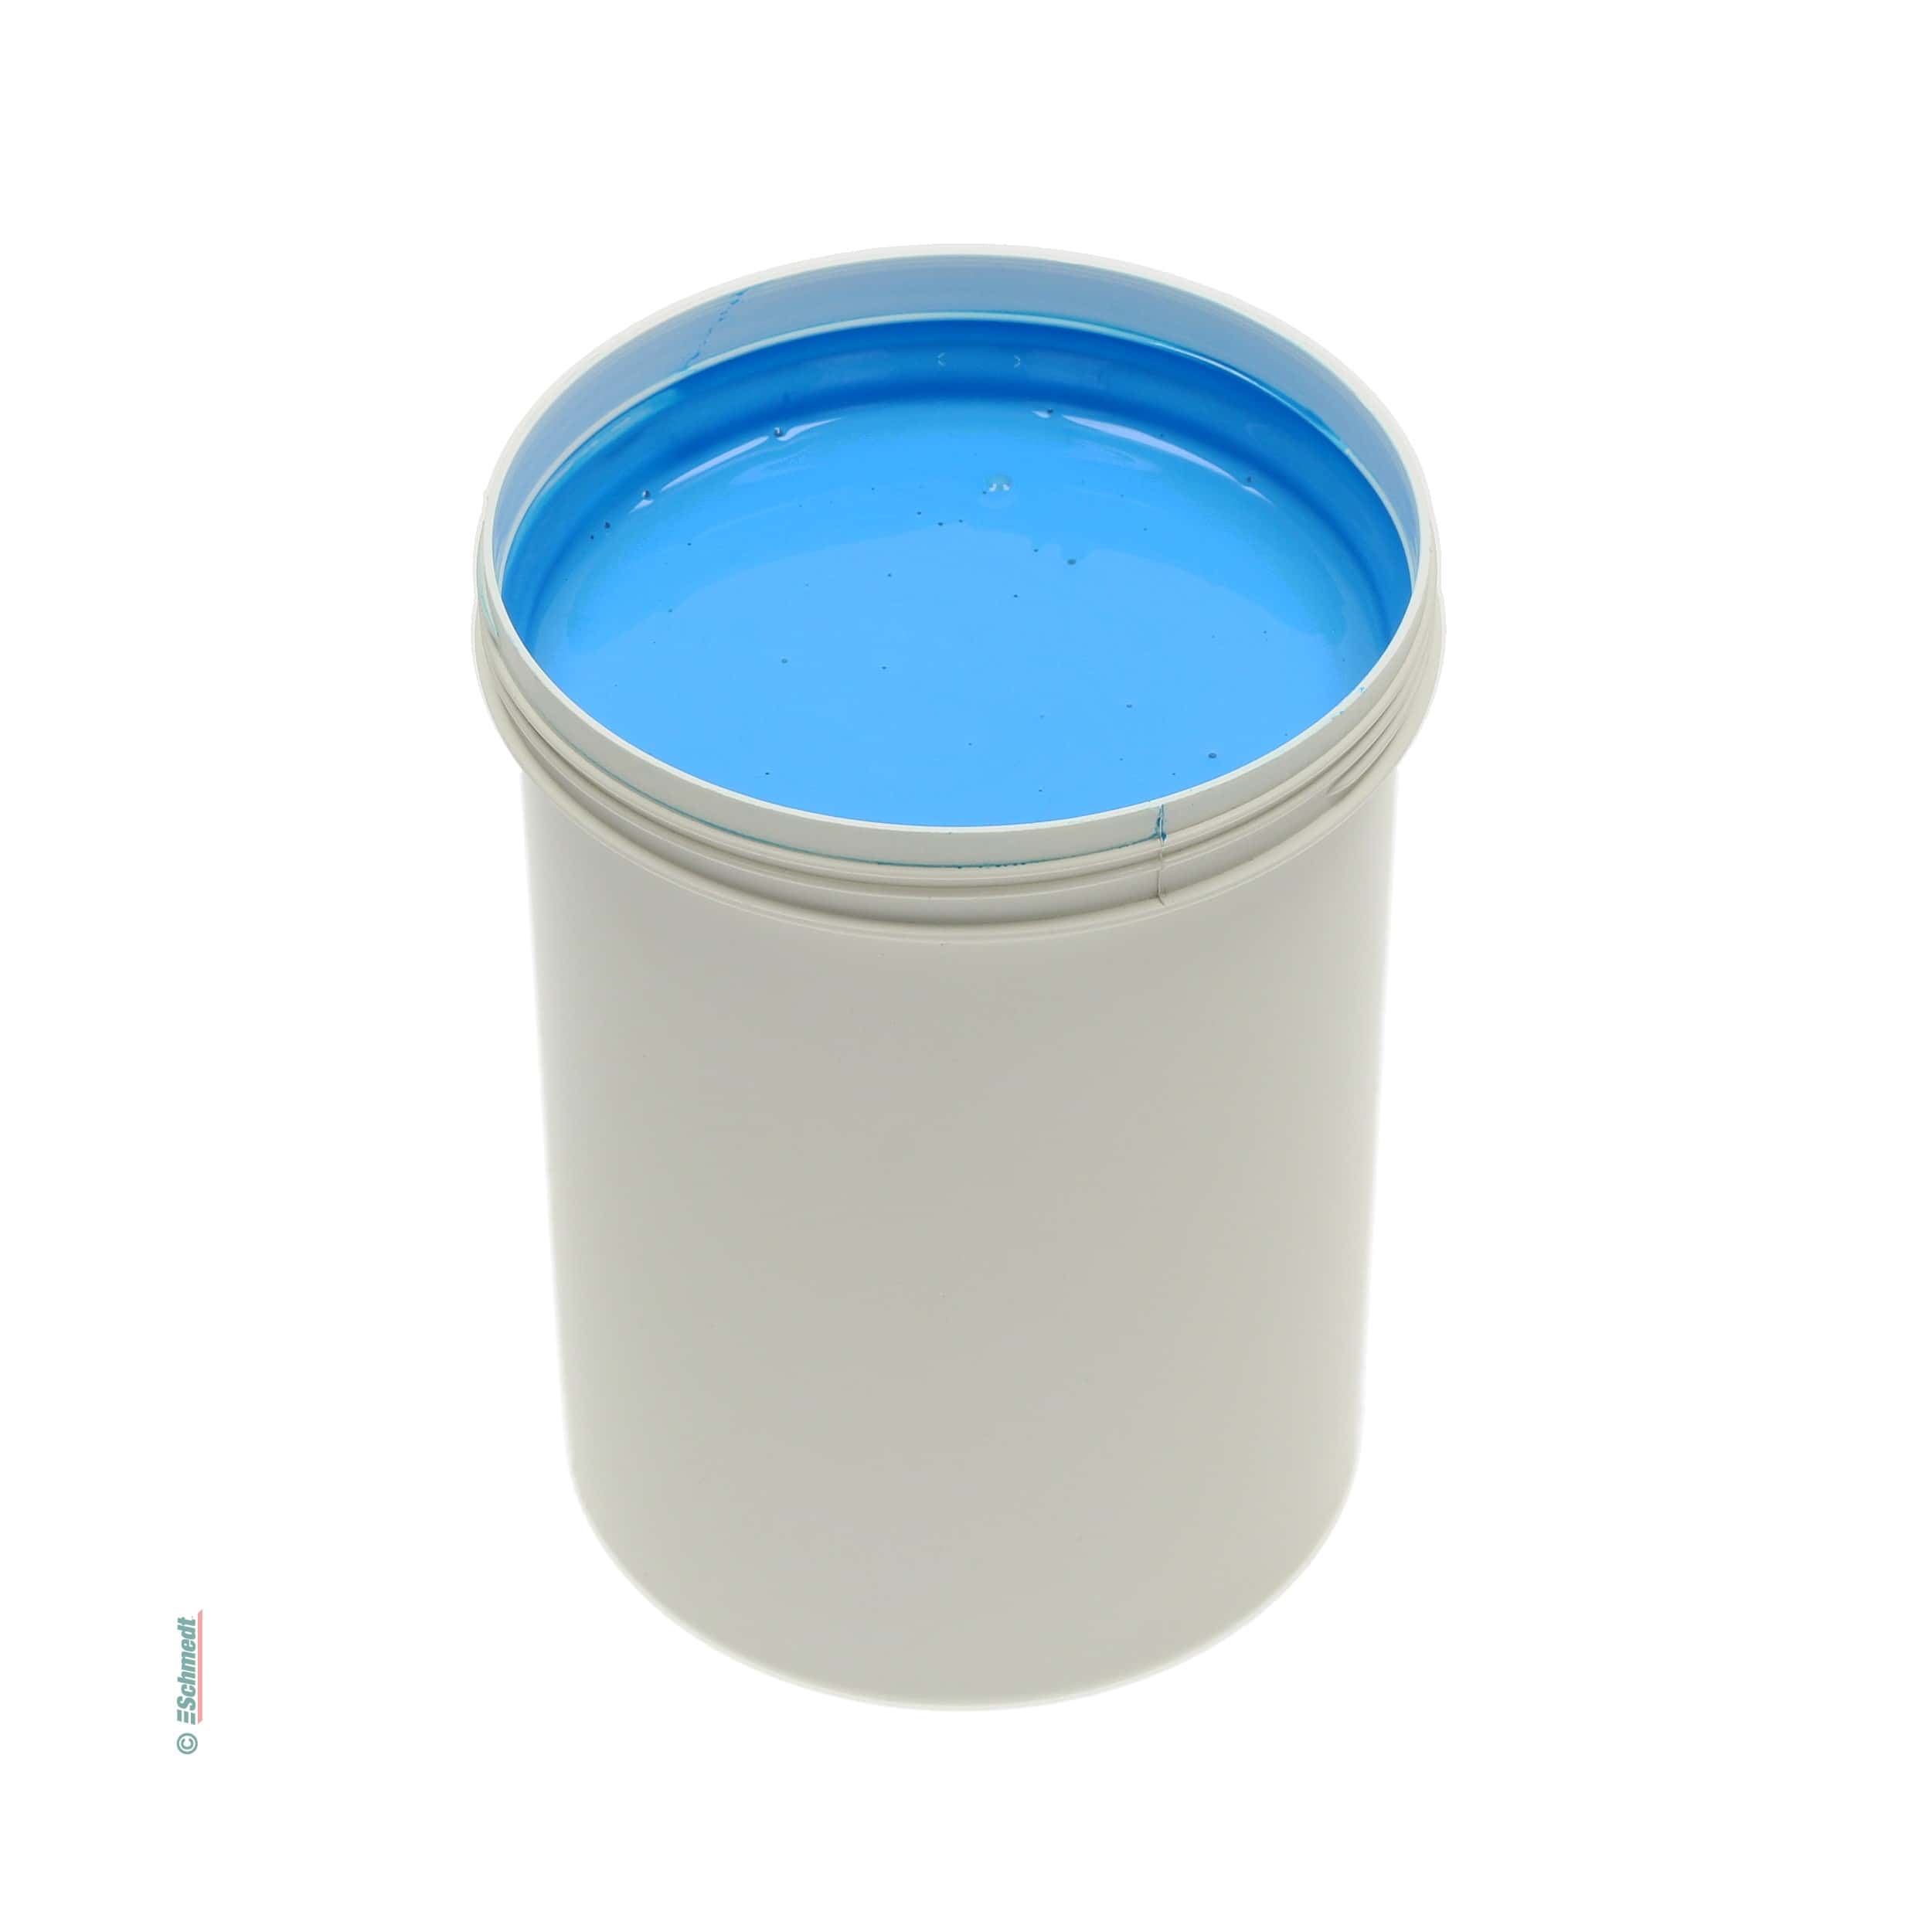 Peinture de colle - Couleur bleu foncé - Contenu Bouteille / 100 ml - pour teindre colles à dispersion comme p. ex. pour bloc-notes ou livre... - image-1